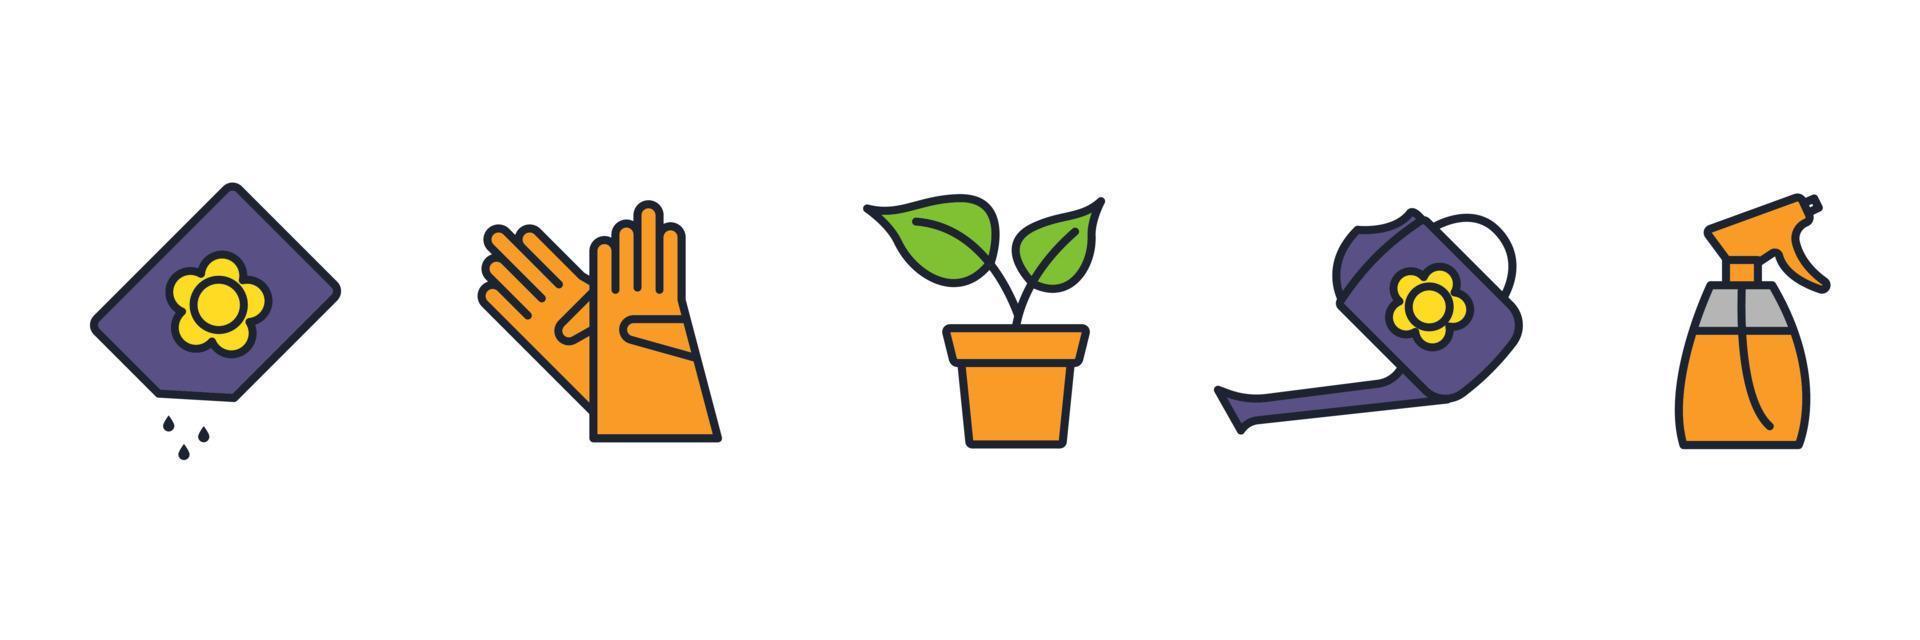 fiore e giardinaggio set icona simbolo modello per grafica e web design collezione logo illustrazione vettoriale